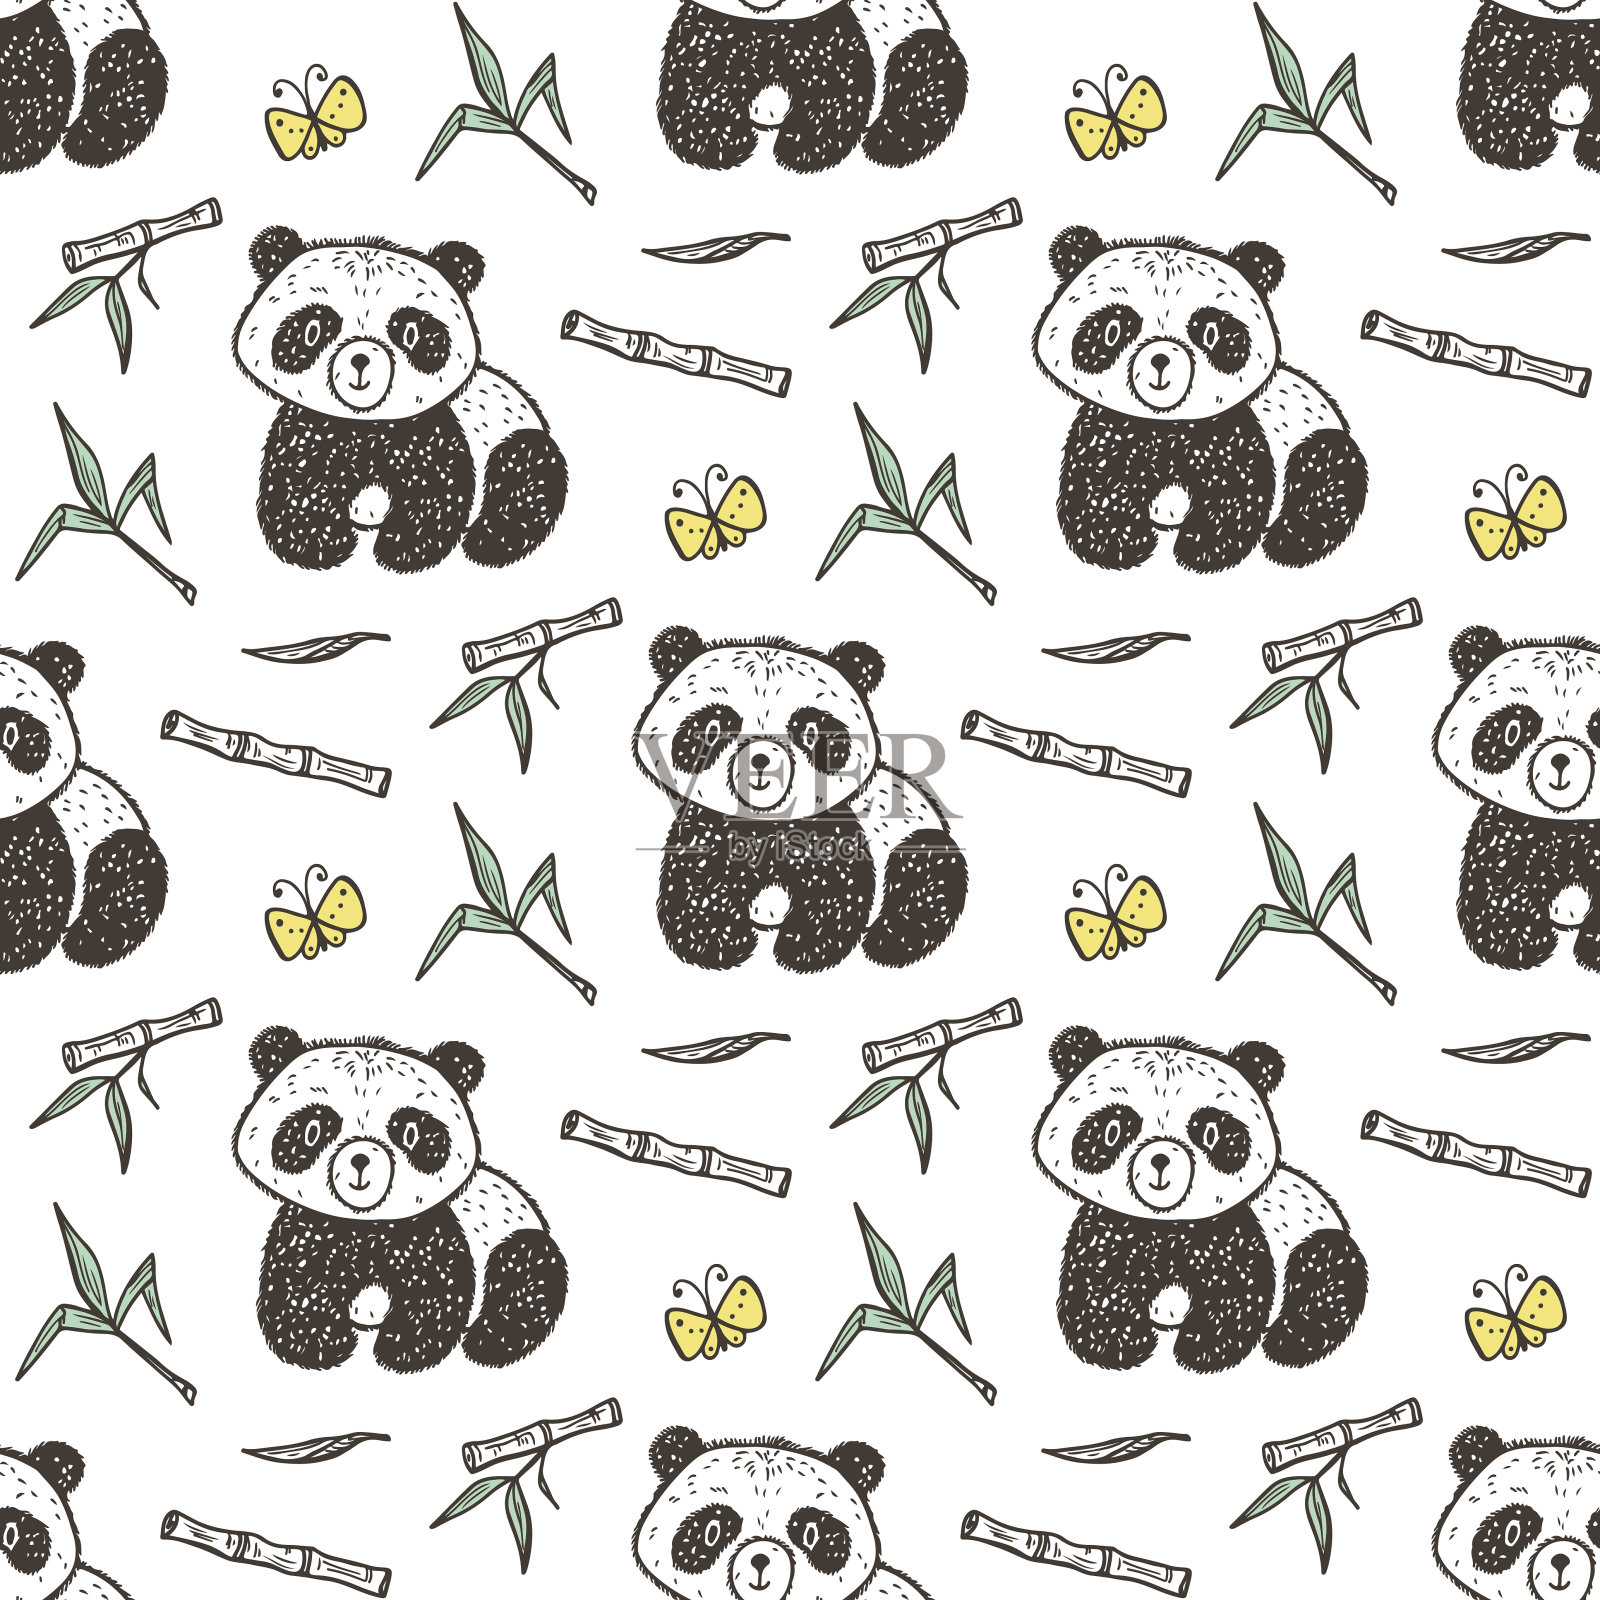 可爱的熊猫宝宝与竹子矢量无缝模式。无尽的熊猫壁纸。手绘涂鸦有趣的黑白熊。背景的孩子。插画图片素材